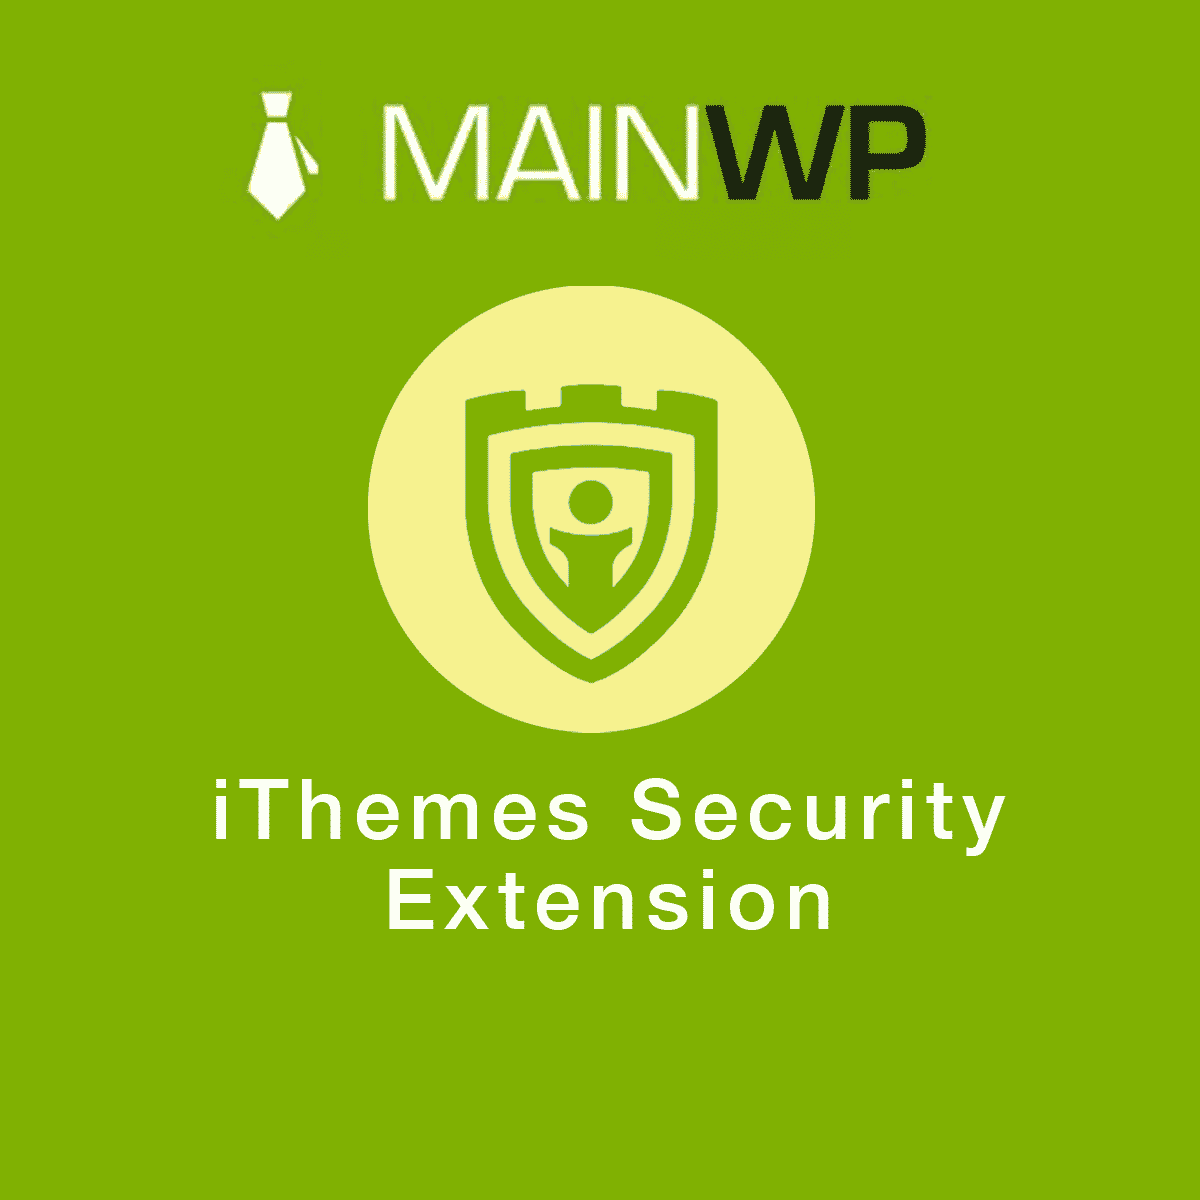 دانلود افزونه وردپرس MainWP iThemes Security